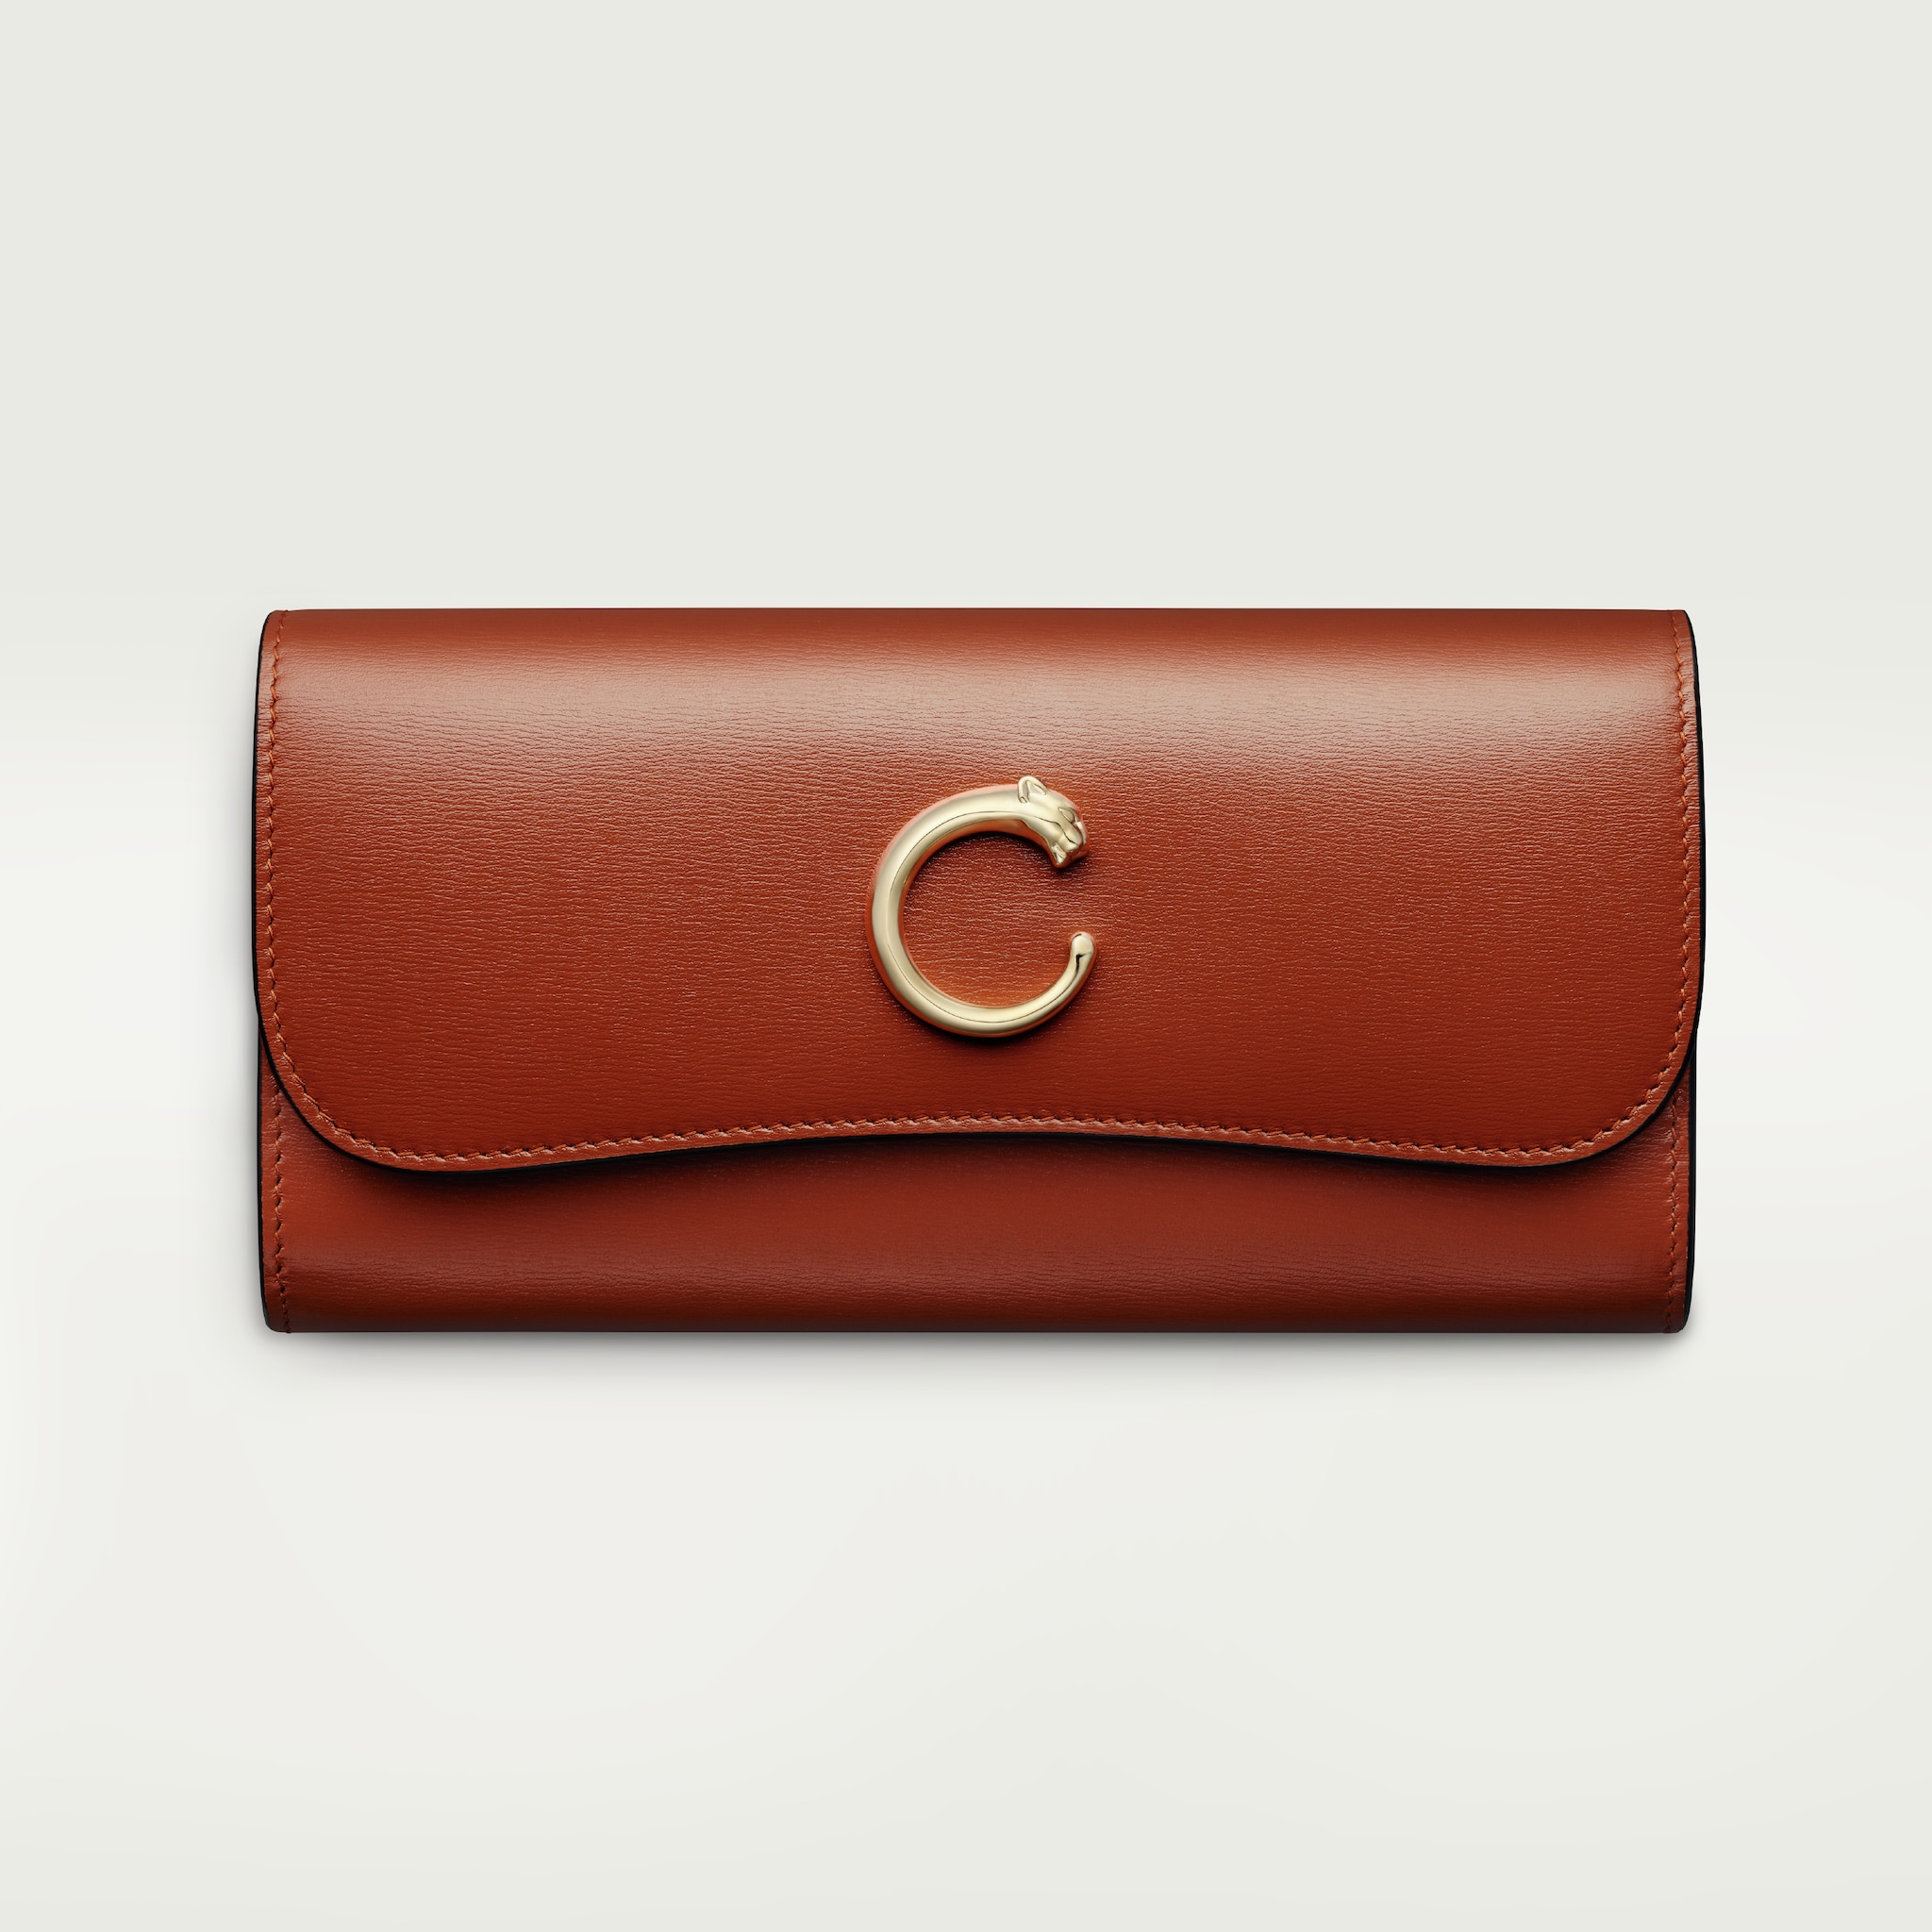 International wallet with flap, Panthère de Cartier
Chestnut calfskin, golden finish